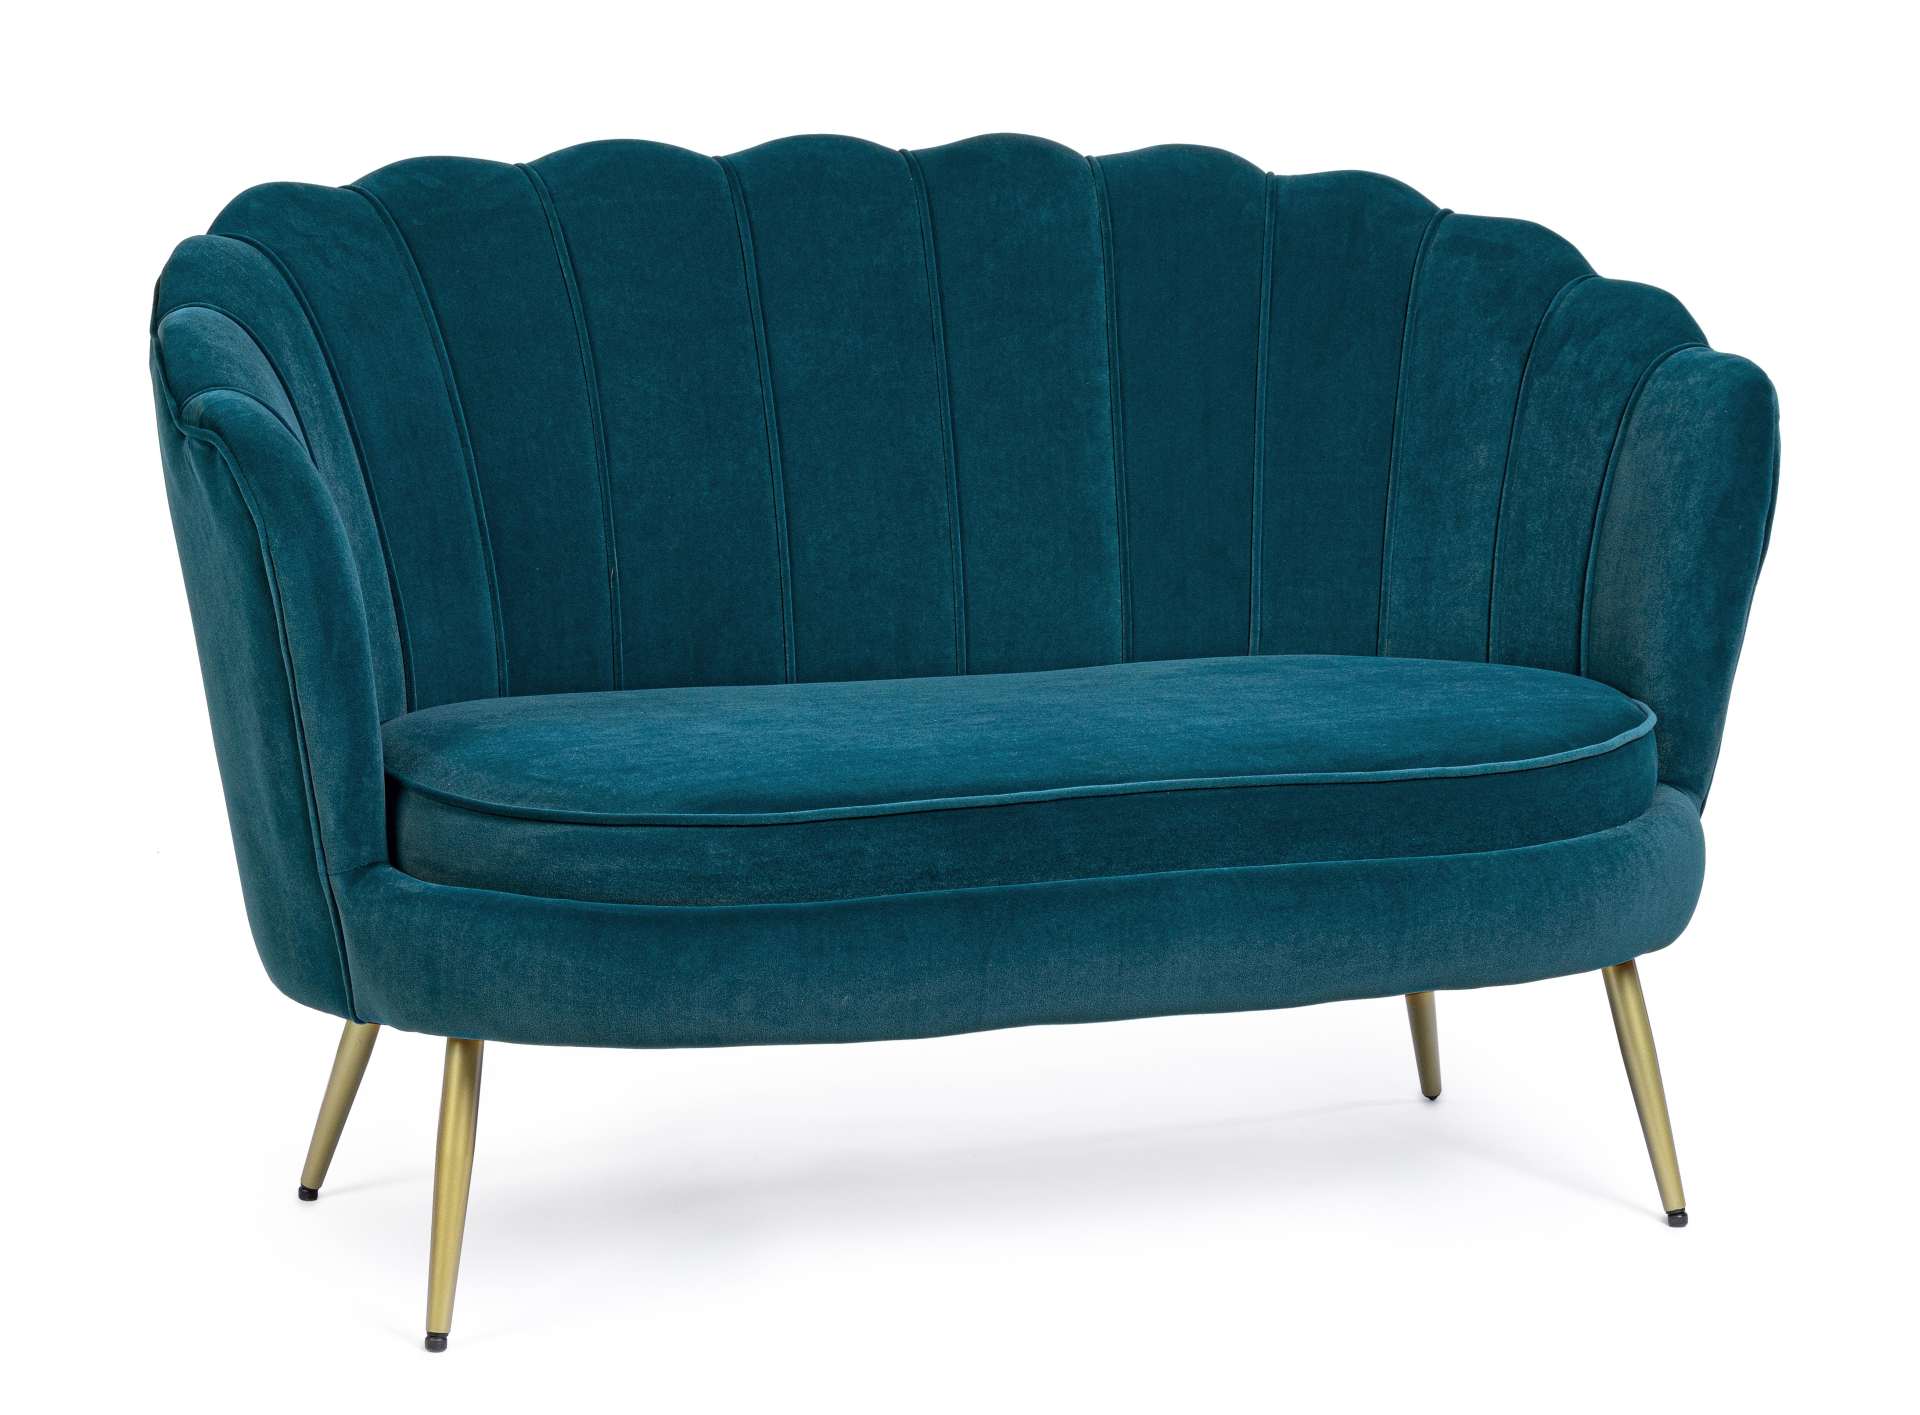 Das Sofa Giliola überzeugt mit seinem modernen Design. Gefertigt wurde es aus Stoff in Samt-Optik, welcher einen blauen Farbton besitzt. Das Gestell ist aus Metall und hat eine goldene Farbe. Das Sofa ist in der Ausführung als 2-Sitzer. Die Breite beträgt